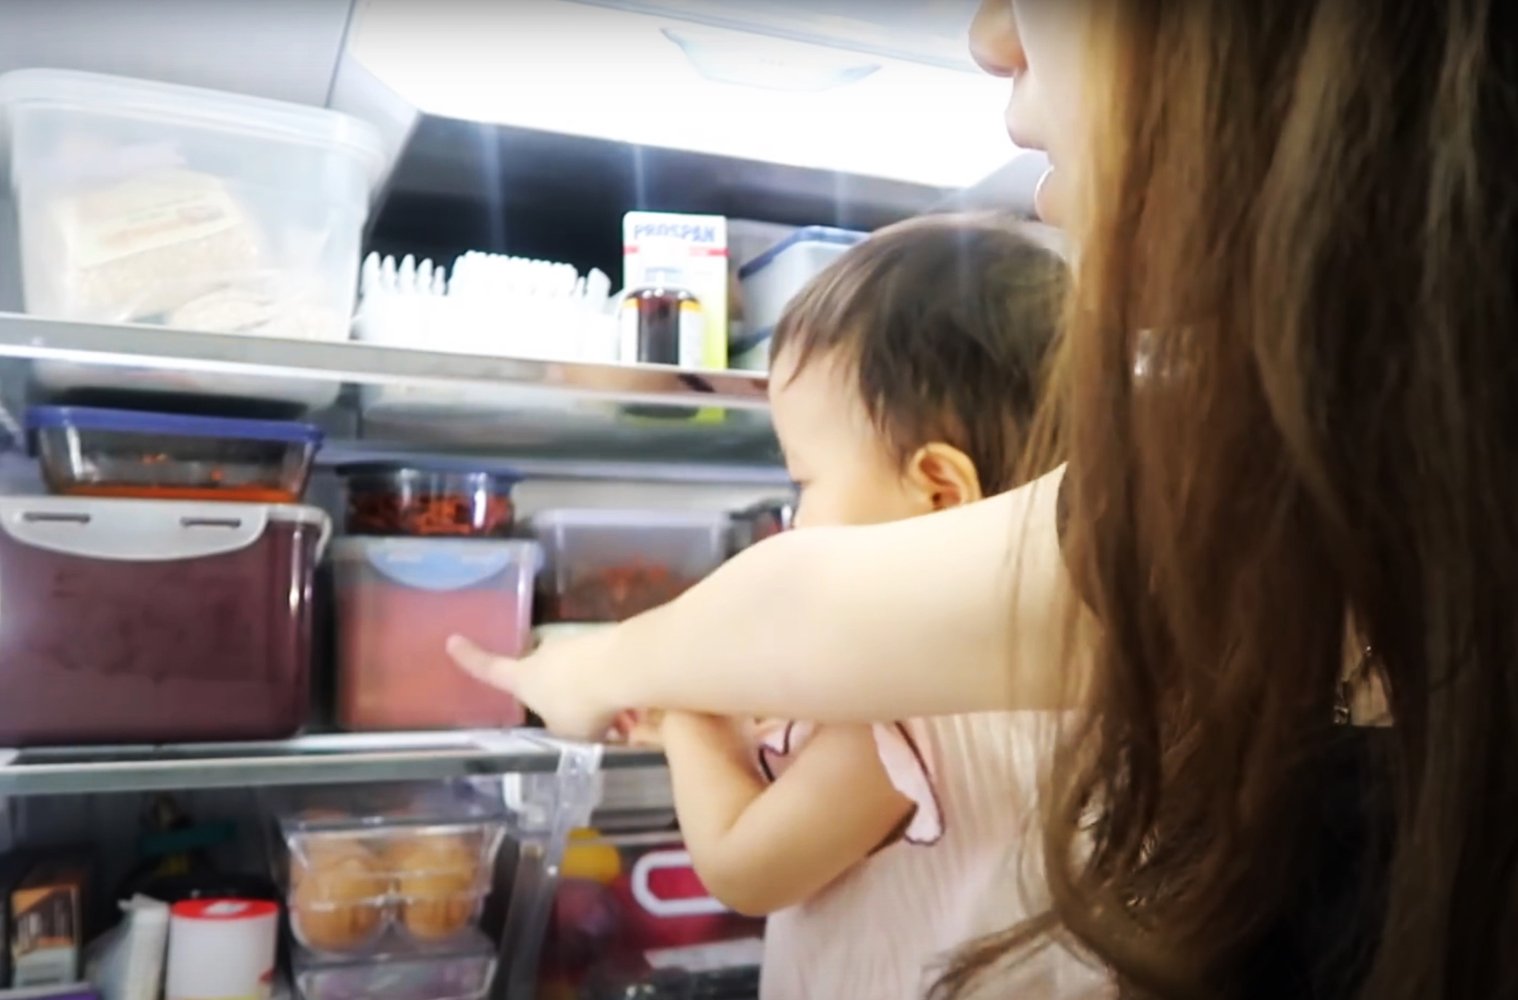 蔚丝分享，韩国人的家里会买一个冰箱专门置放泡菜，虽然她家里没有专门的冰箱，但也在自家的冰箱里预留了一个泡菜的专属空间。